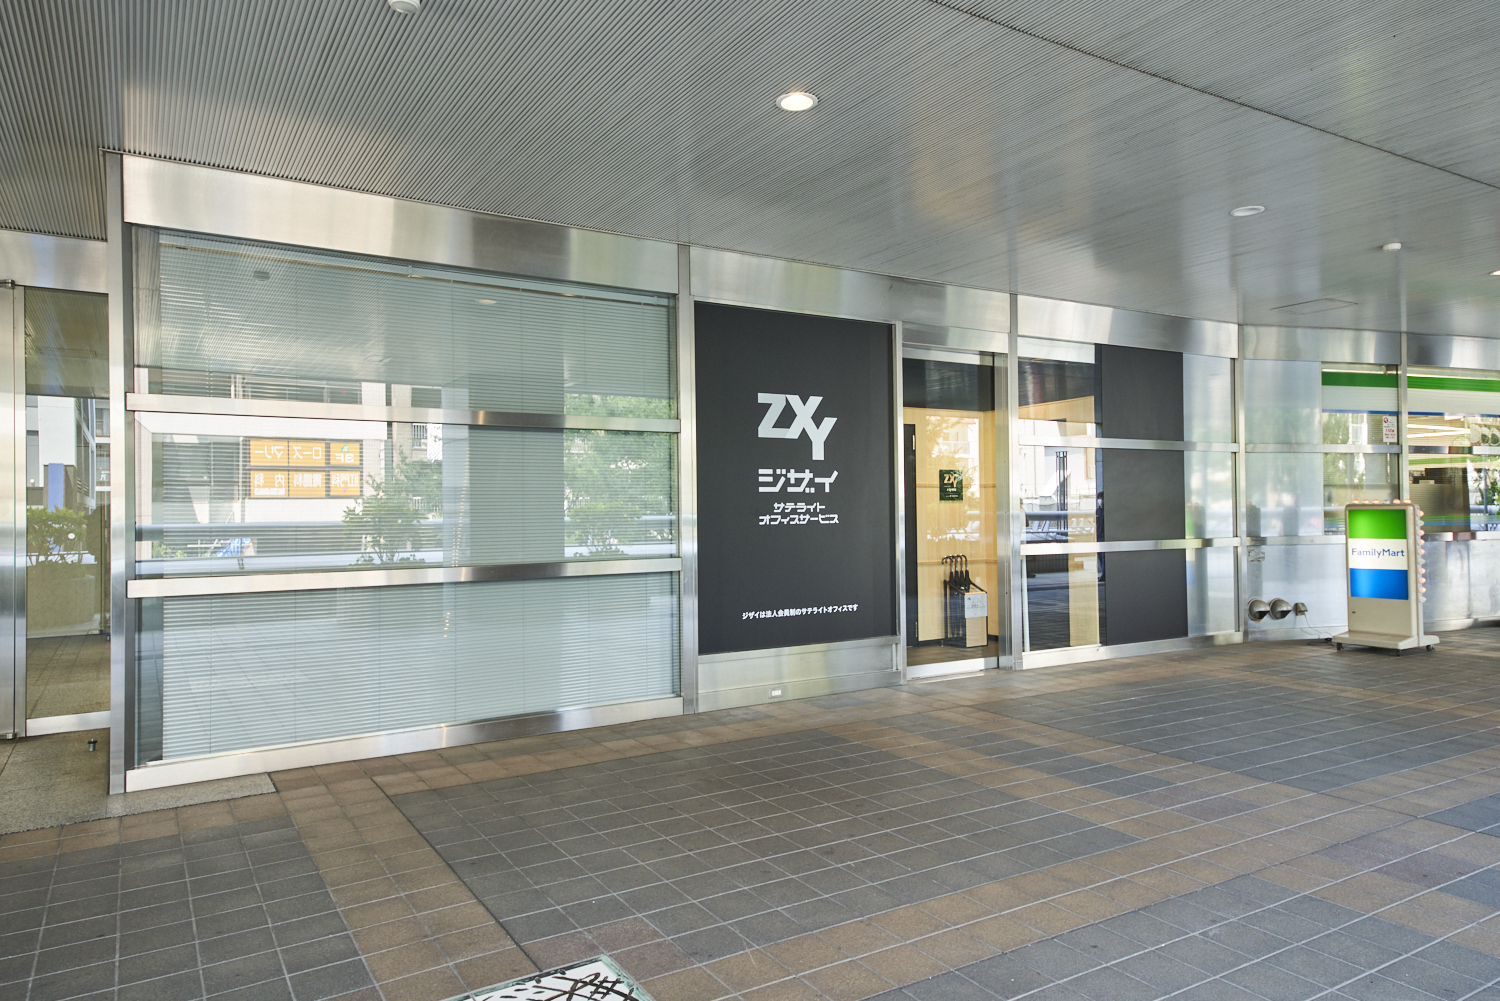 ZXY［ジザイ］錦糸町2 | サテライトオフィスサービス | テレワークに 